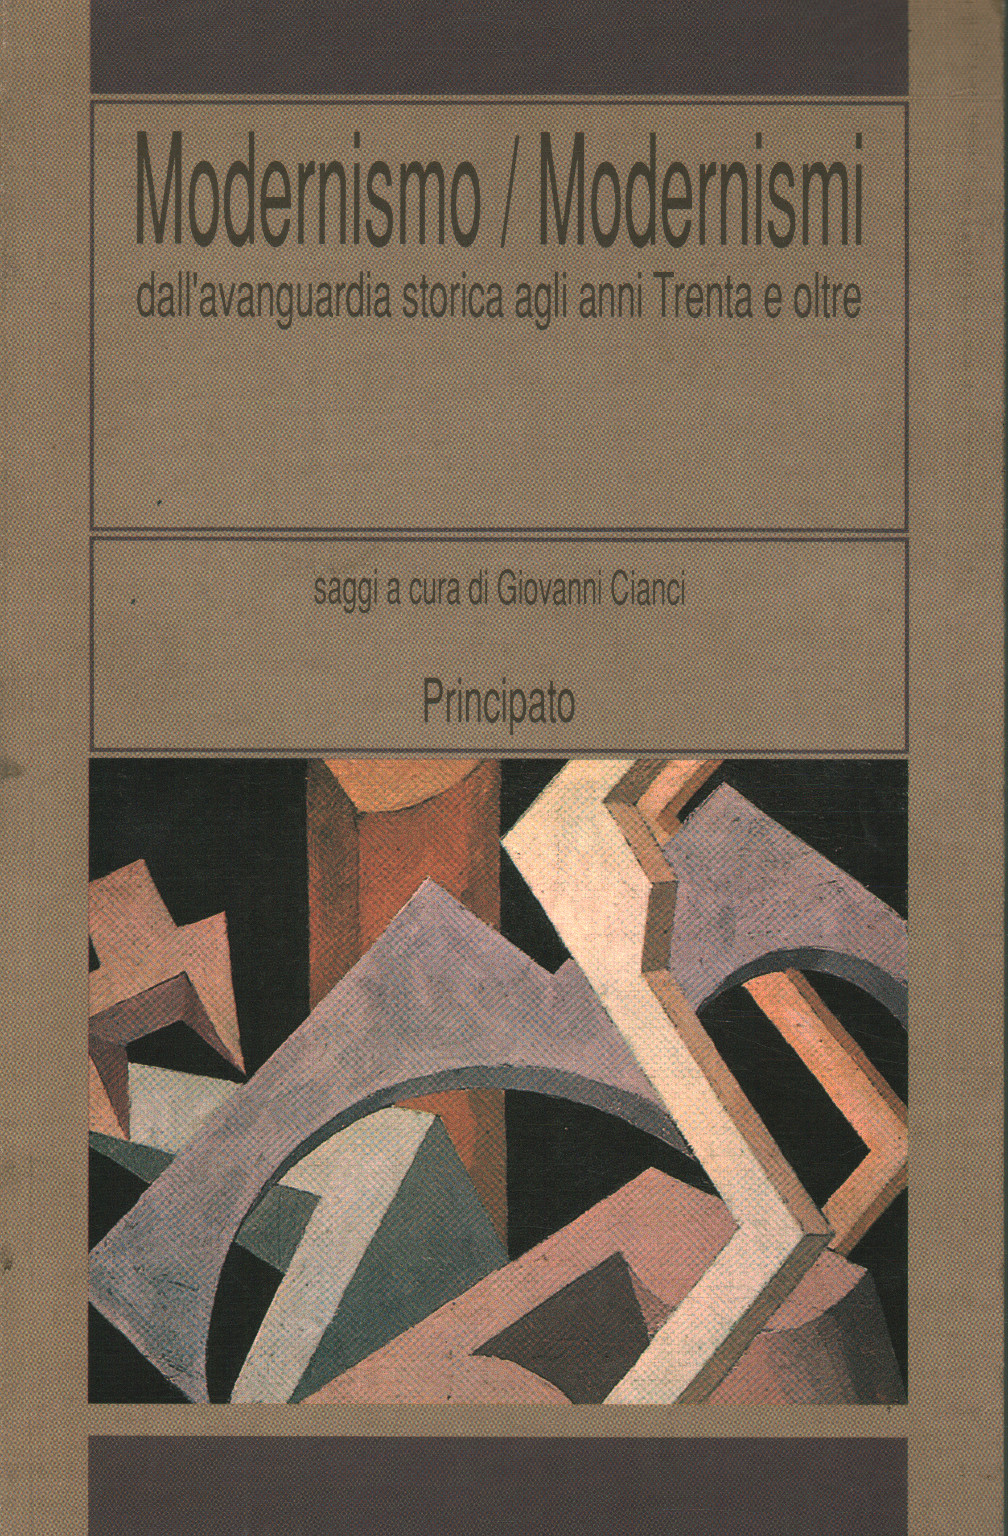 Modernismo / Modernismo, Giovanni Cianci